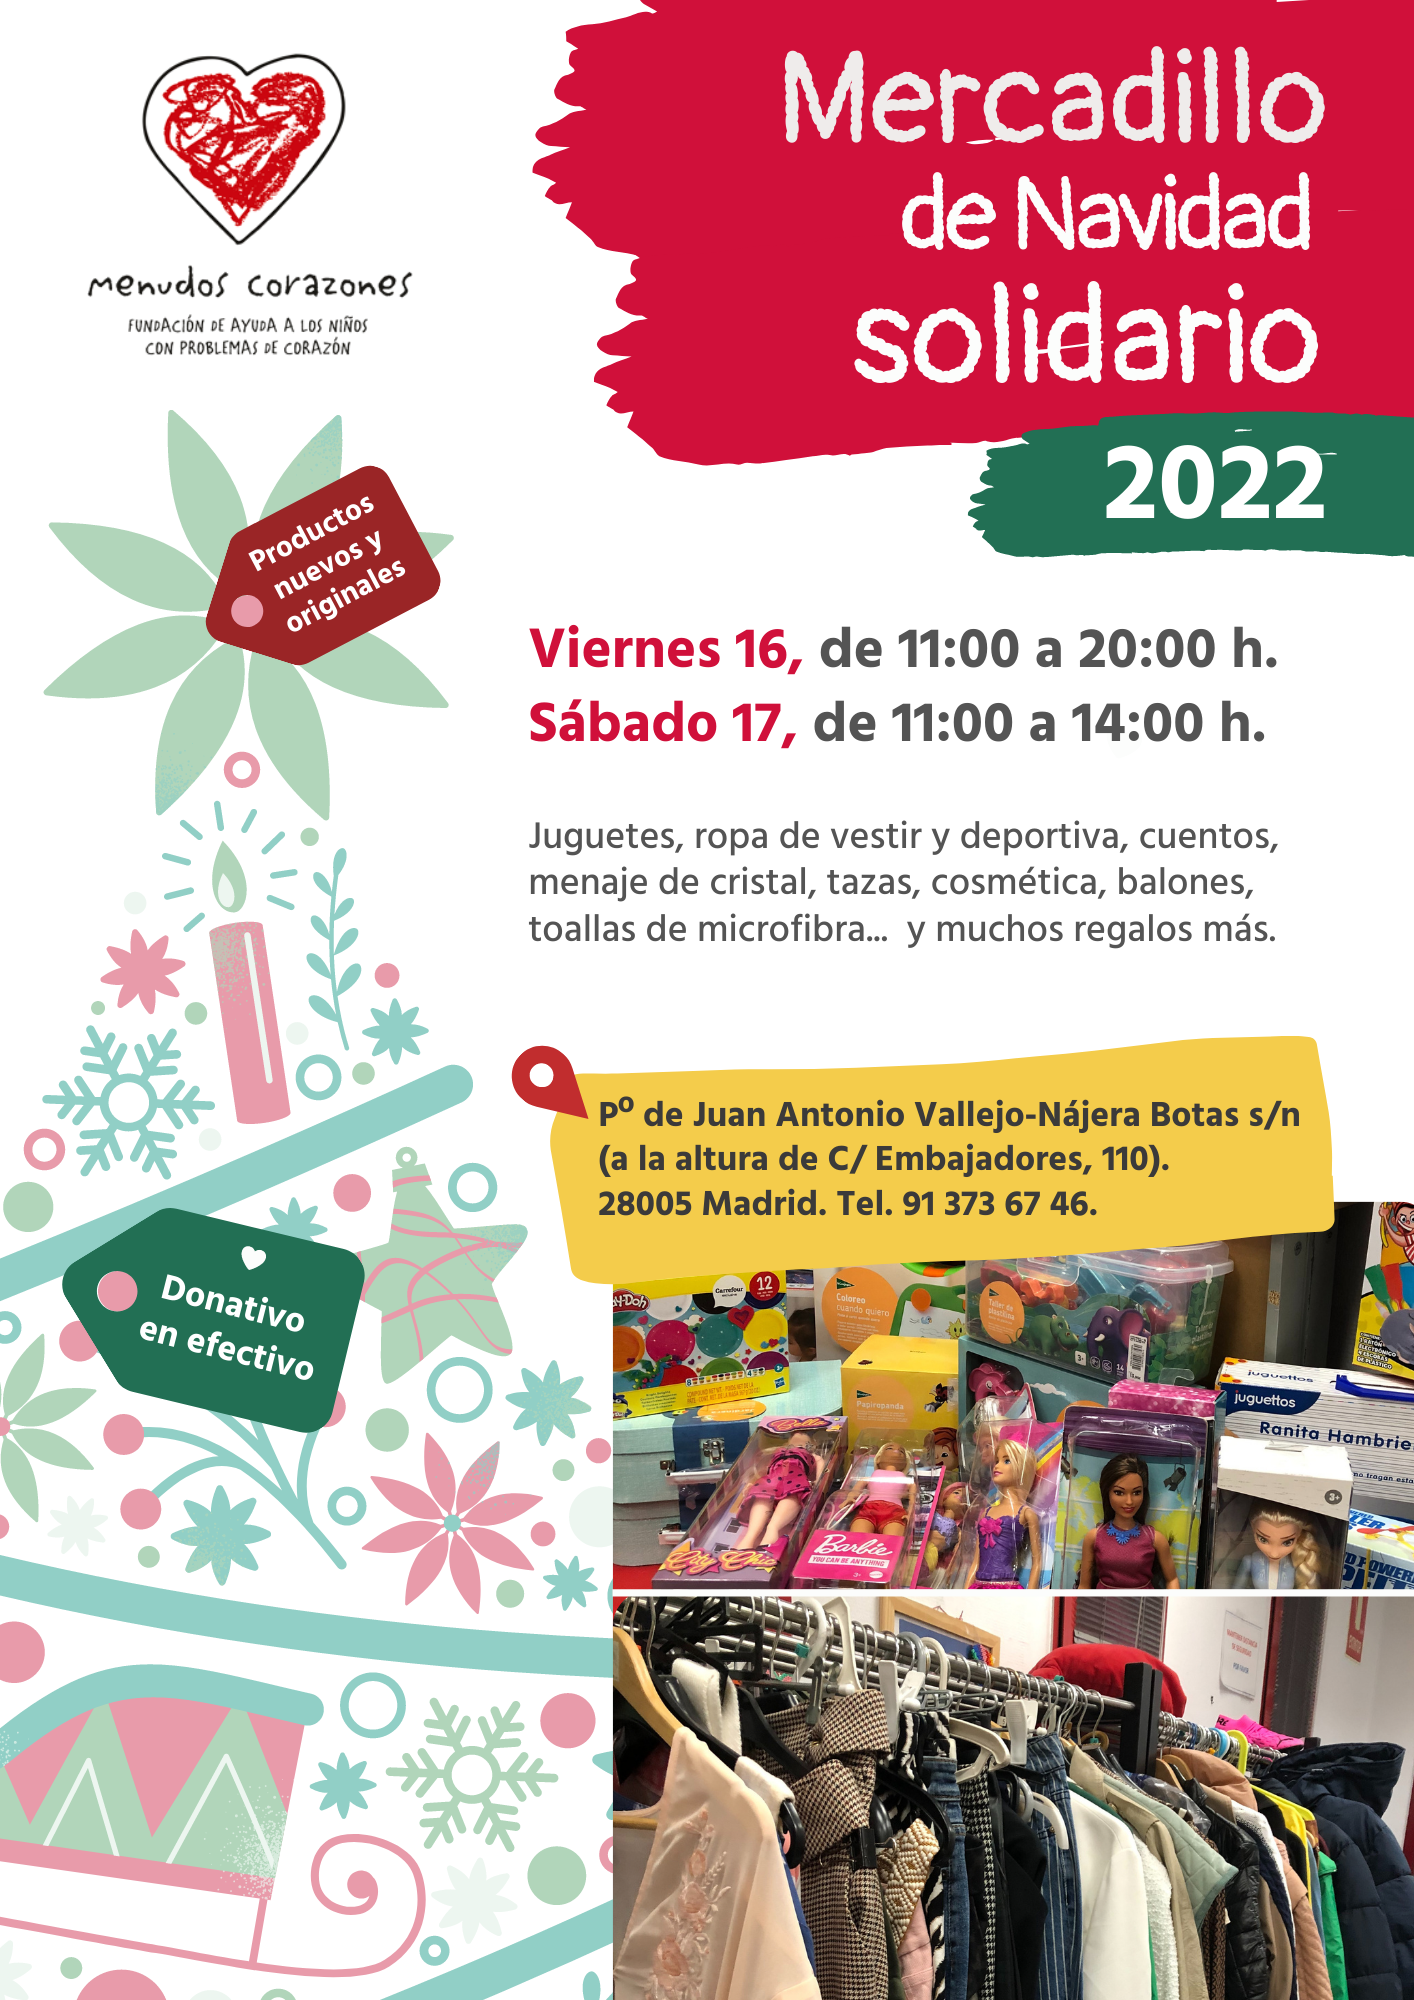 Mercadillo de Navidad Solidario Menudos Corazones